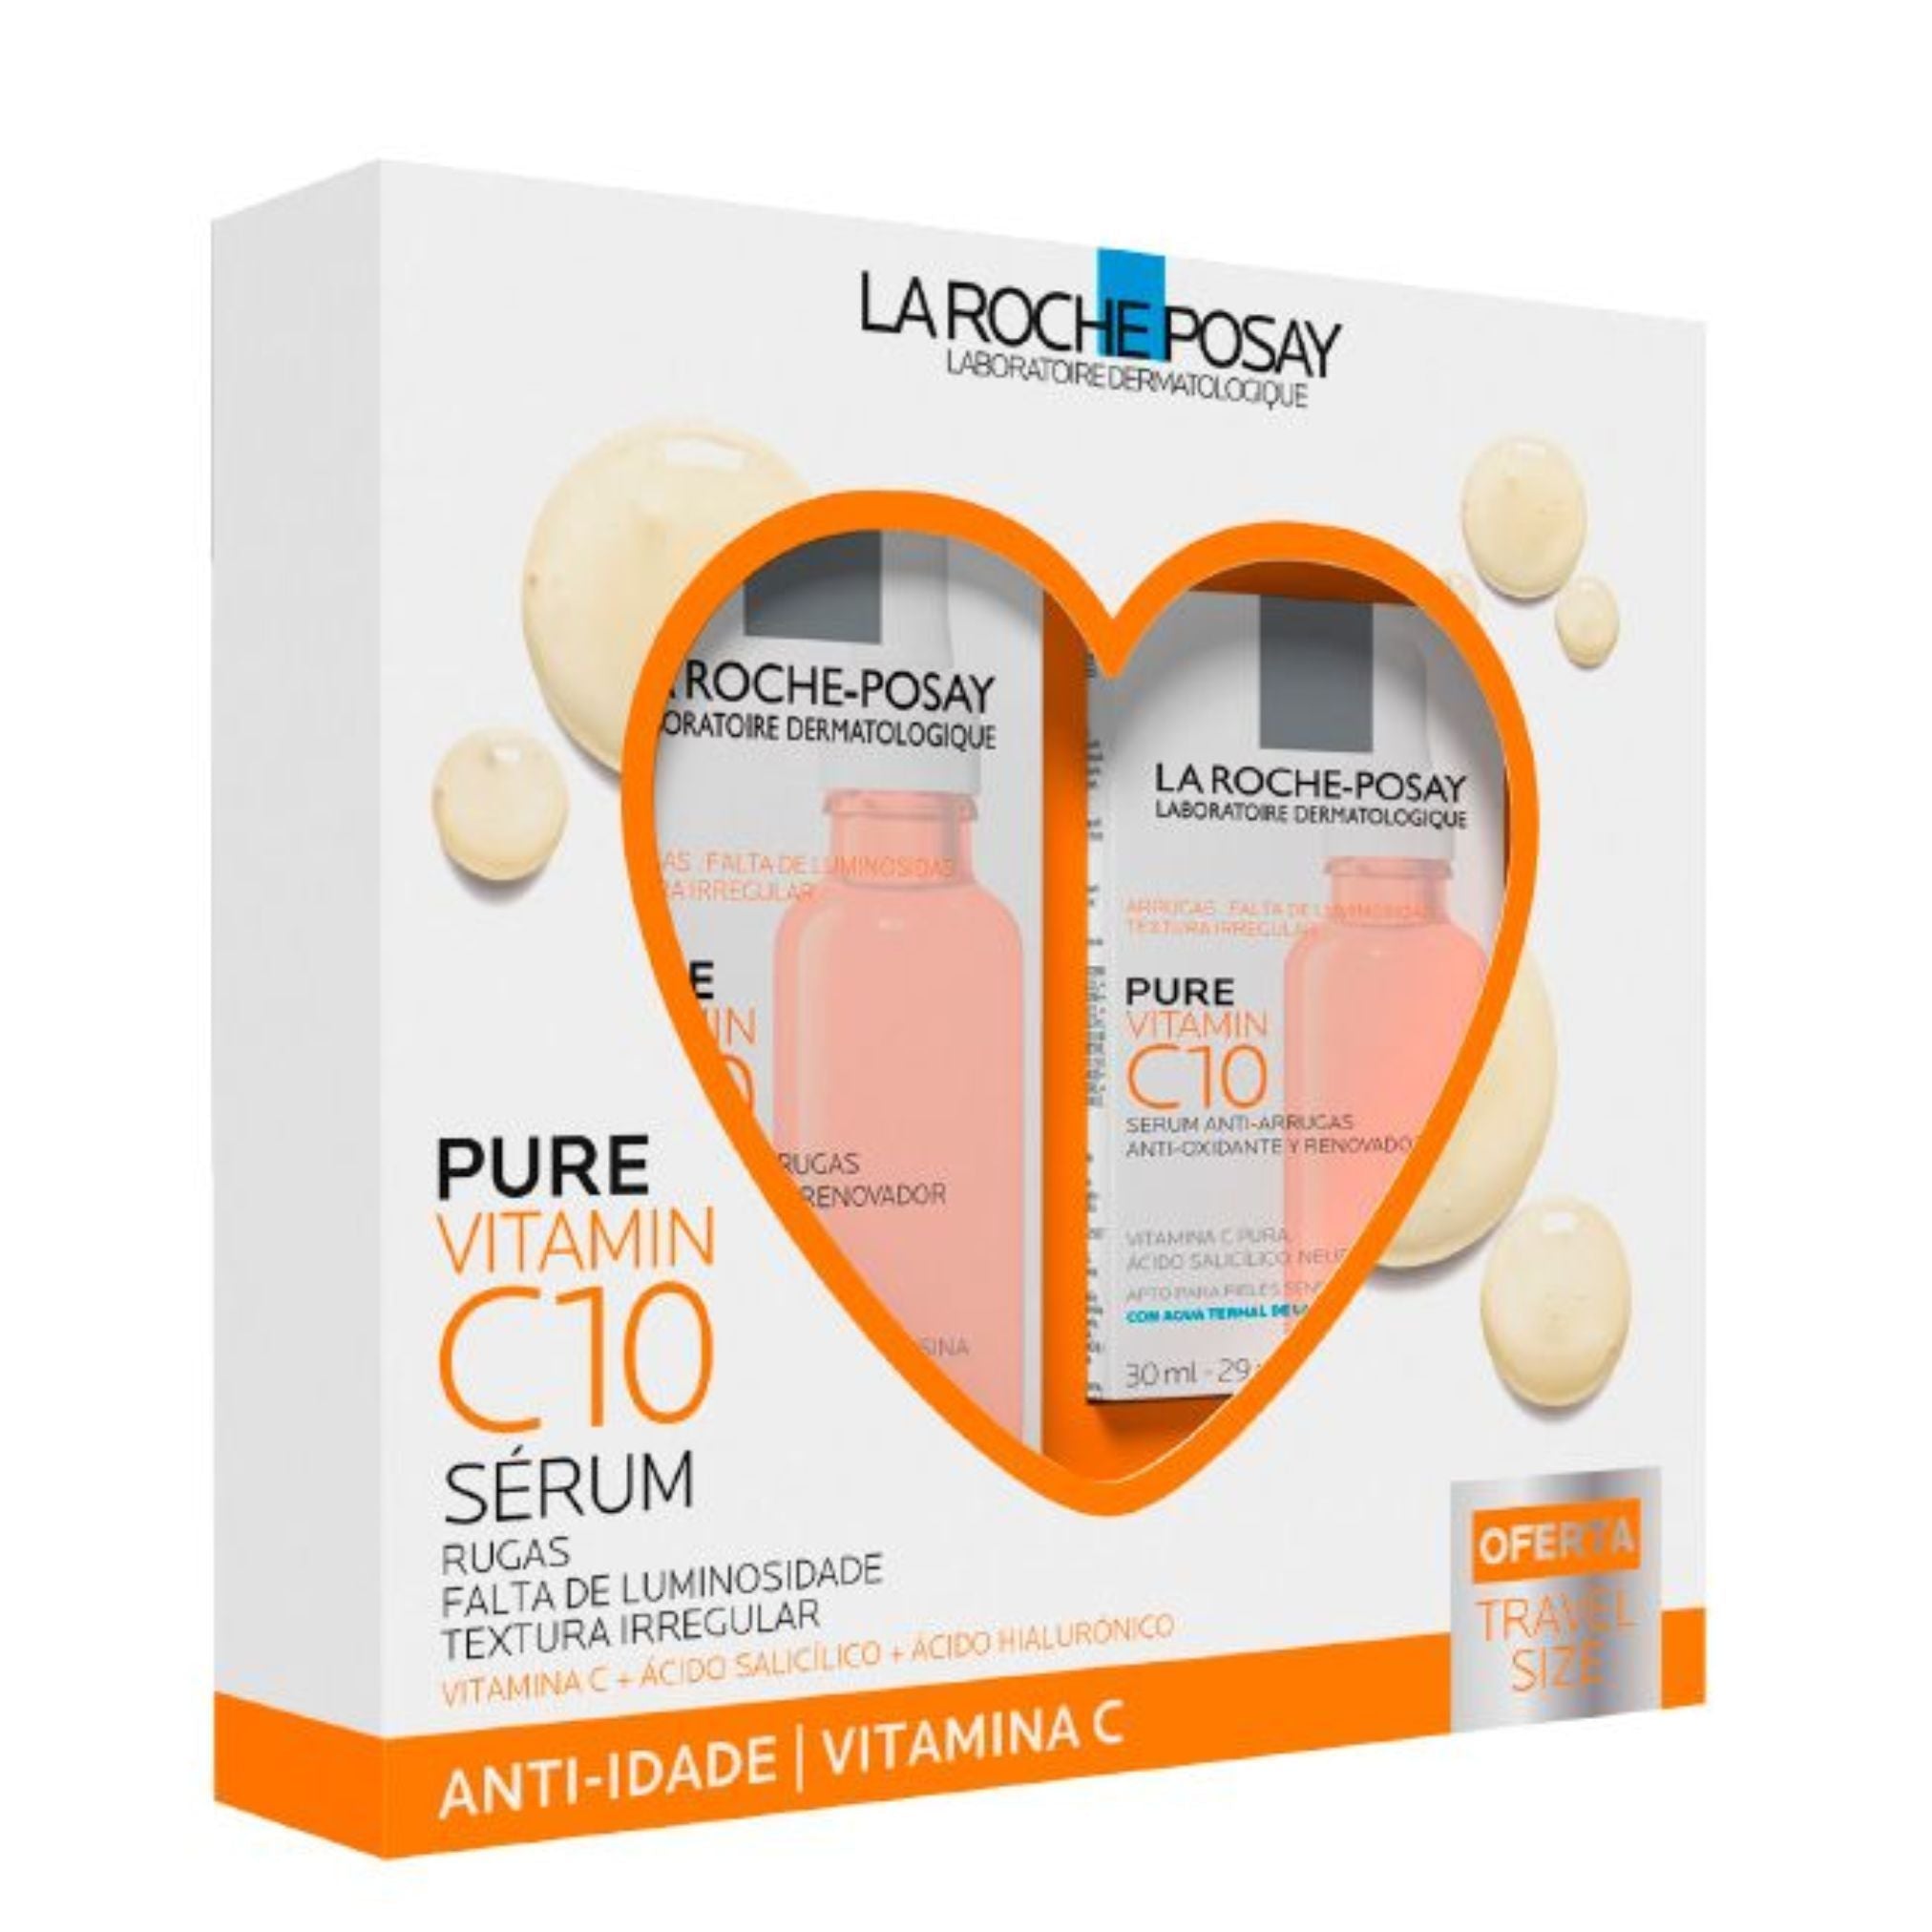 La Roche-Posay Pure Vitamin C10 Serum 30ml + 10ml